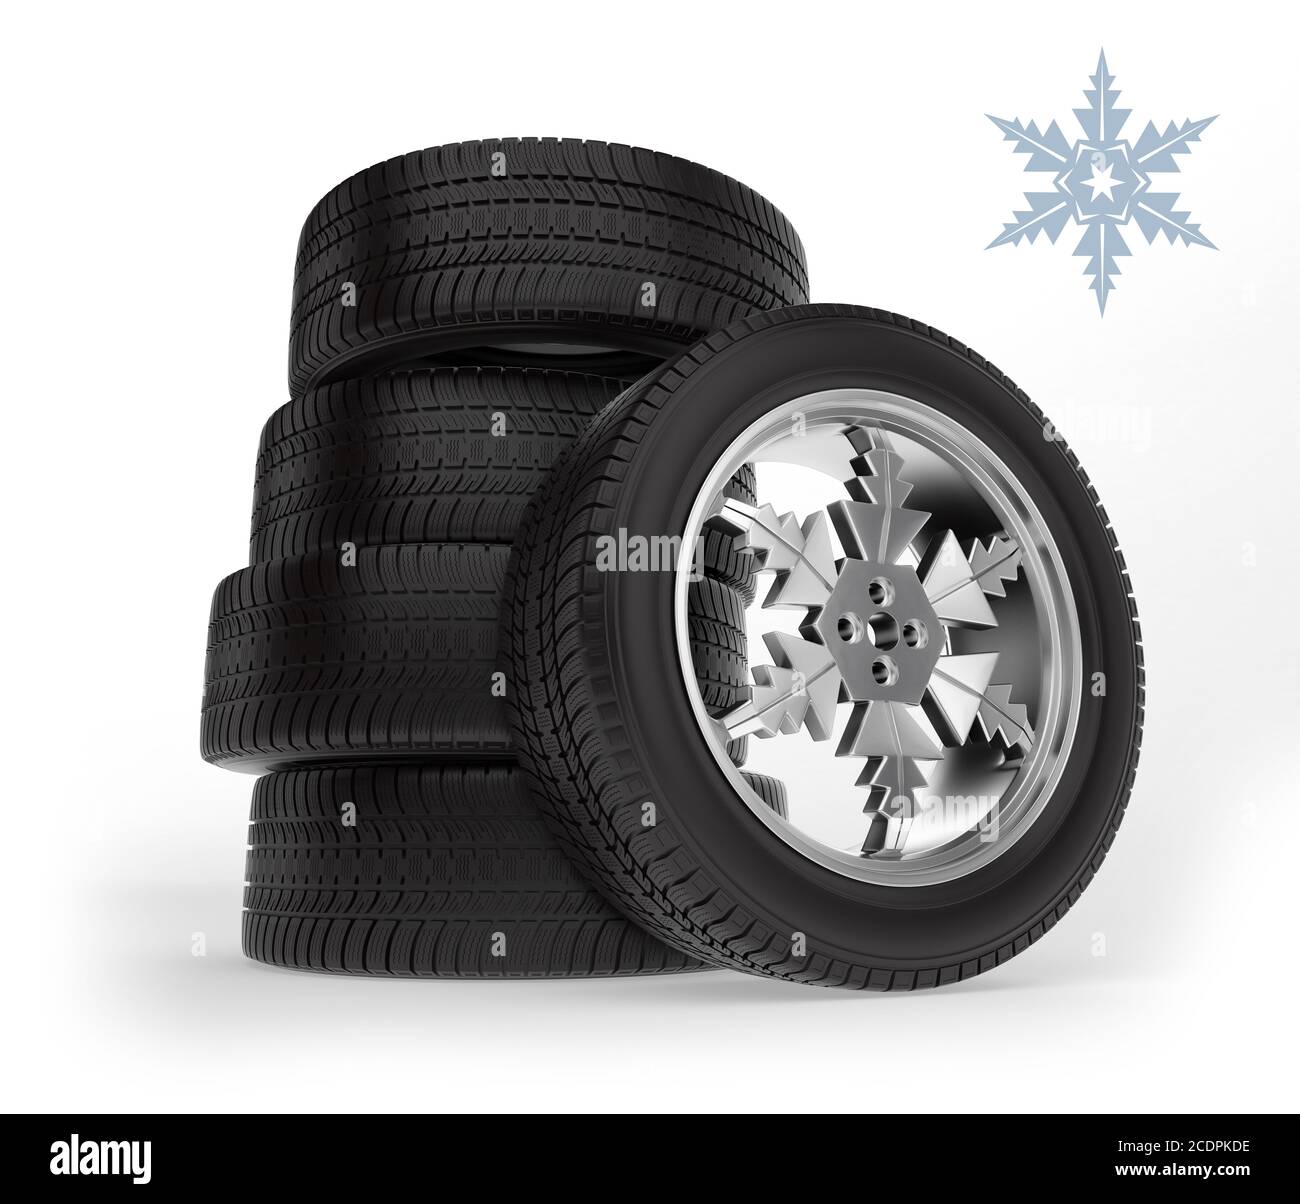 Placez le pneu d'hiver sur la jante sous forme de flocons de neige. Roues d' hiver de voiture sur fond blanc Photo Stock - Alamy